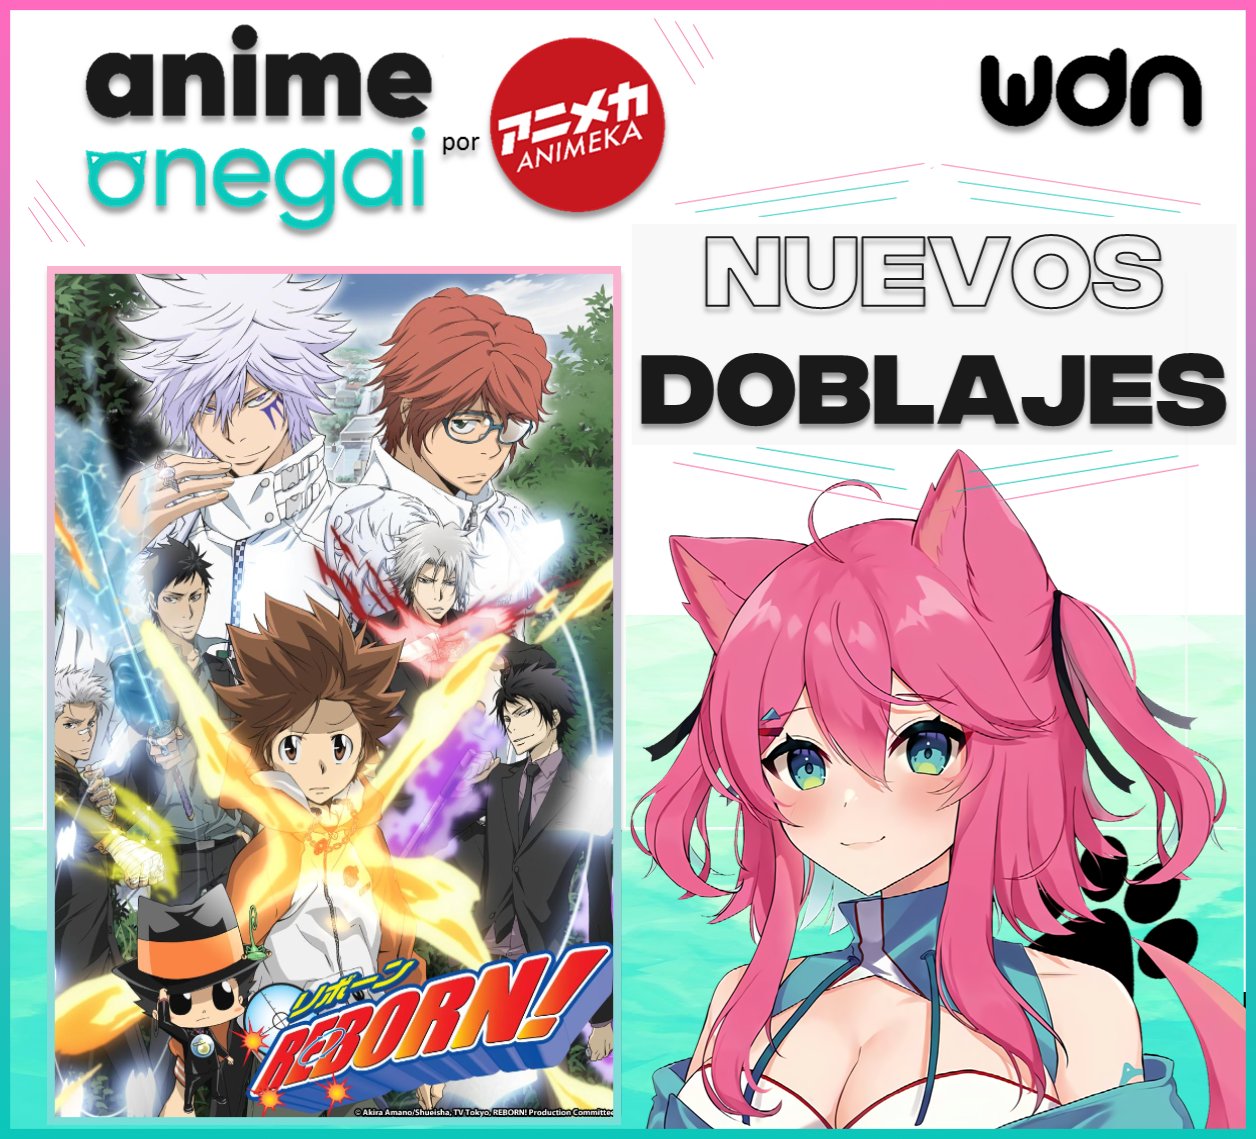 Anime Dublado on X: Indicados a Melhor Continuação de Dublagem! 🏆 Vote em    / X